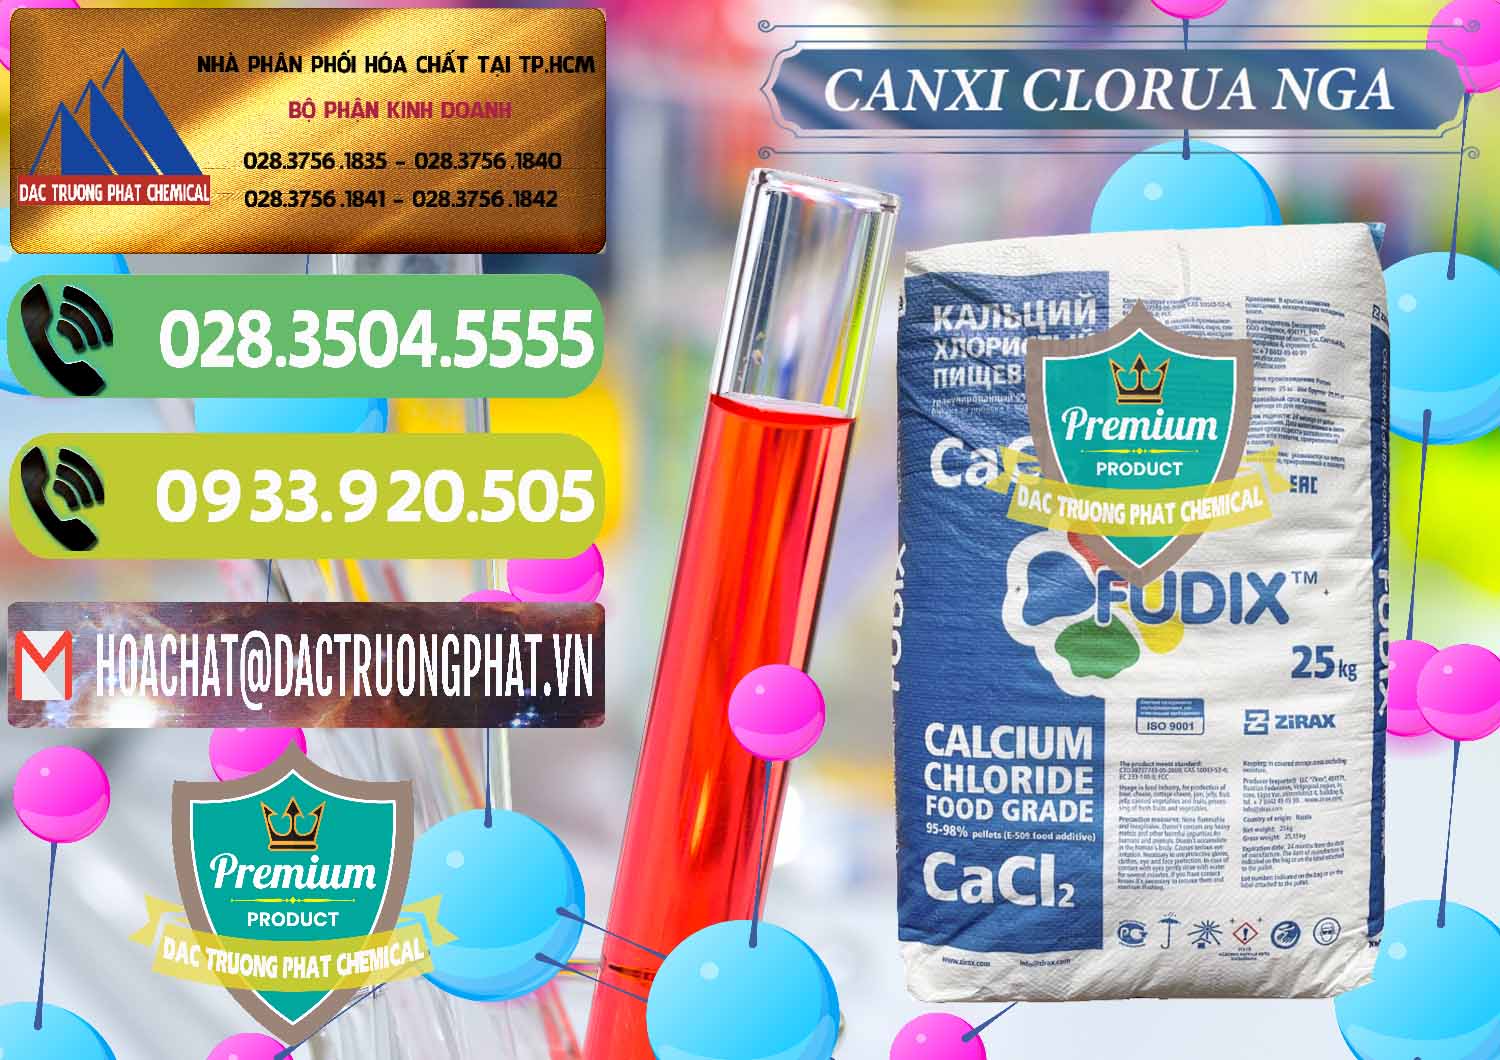 Cty chuyên phân phối và bán CaCl2 – Canxi Clorua Nga Russia - 0430 - Cty chuyên cung cấp & bán hóa chất tại TP.HCM - hoachatmientay.vn